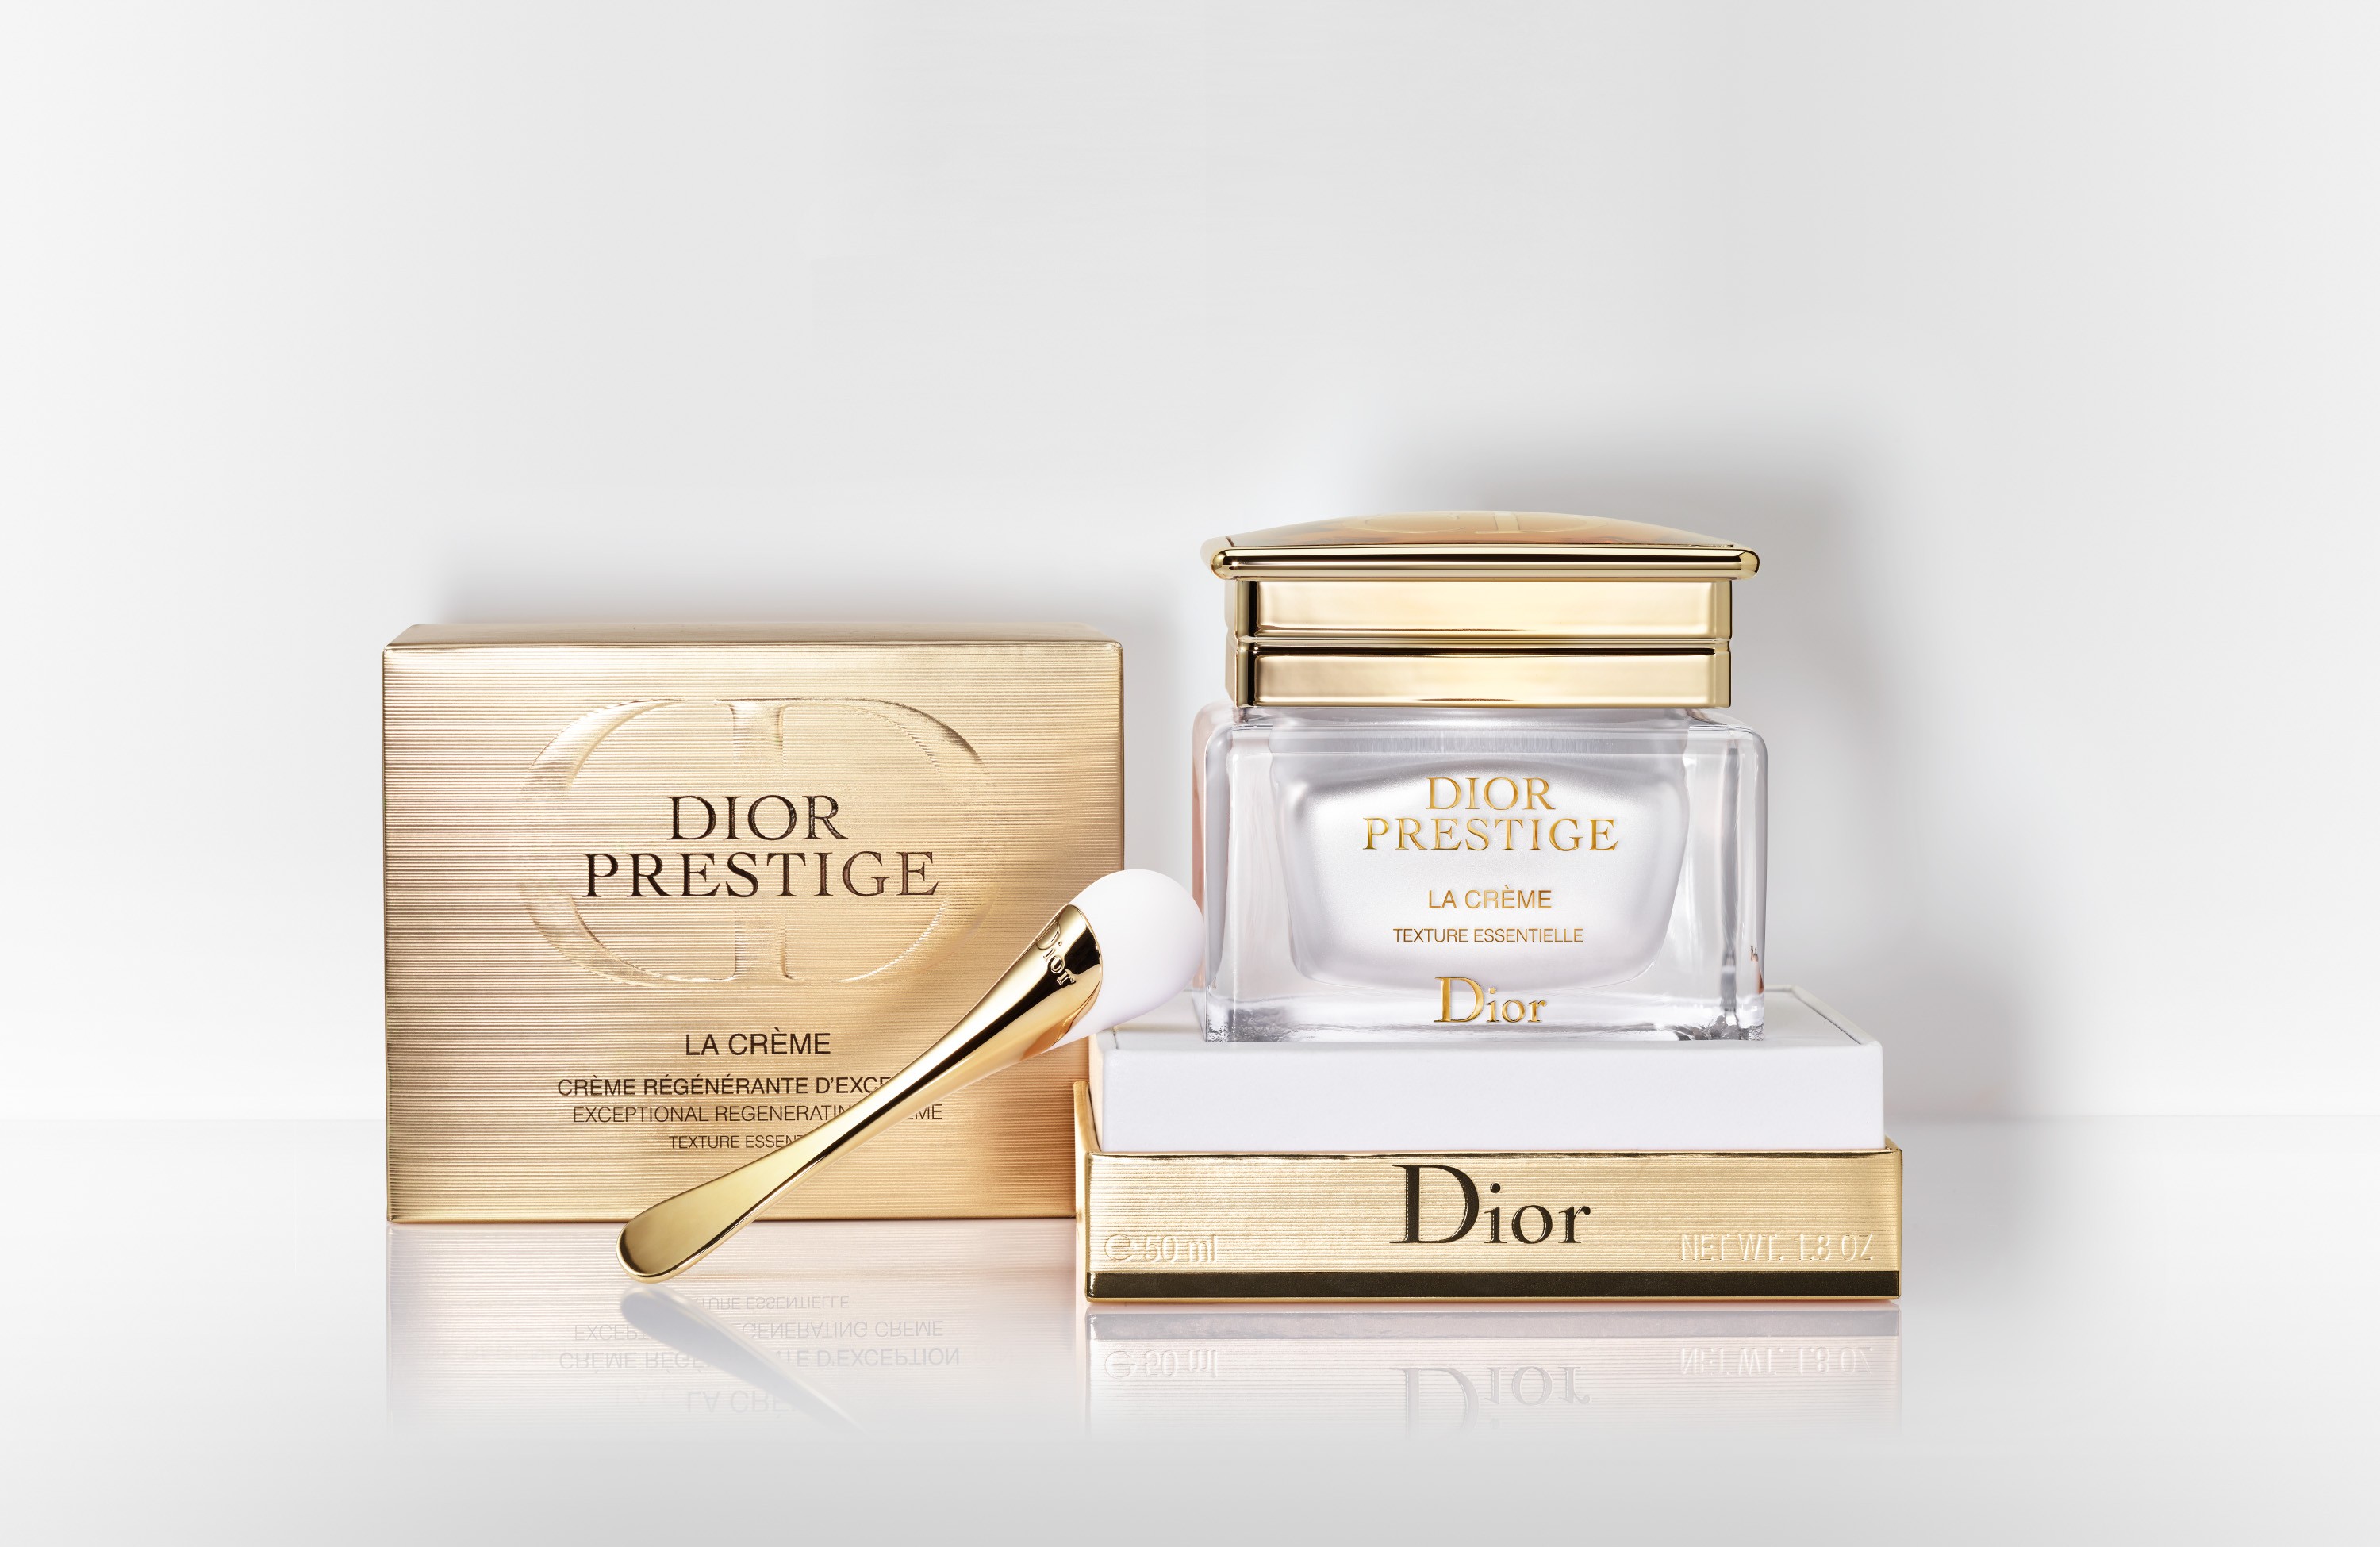 Dior Prestige La Crème Texture Essentielle, Dior Prestige cream, Dior Prestige skincare, Dior skincare, Chanel skincare & Chanel Sublimage